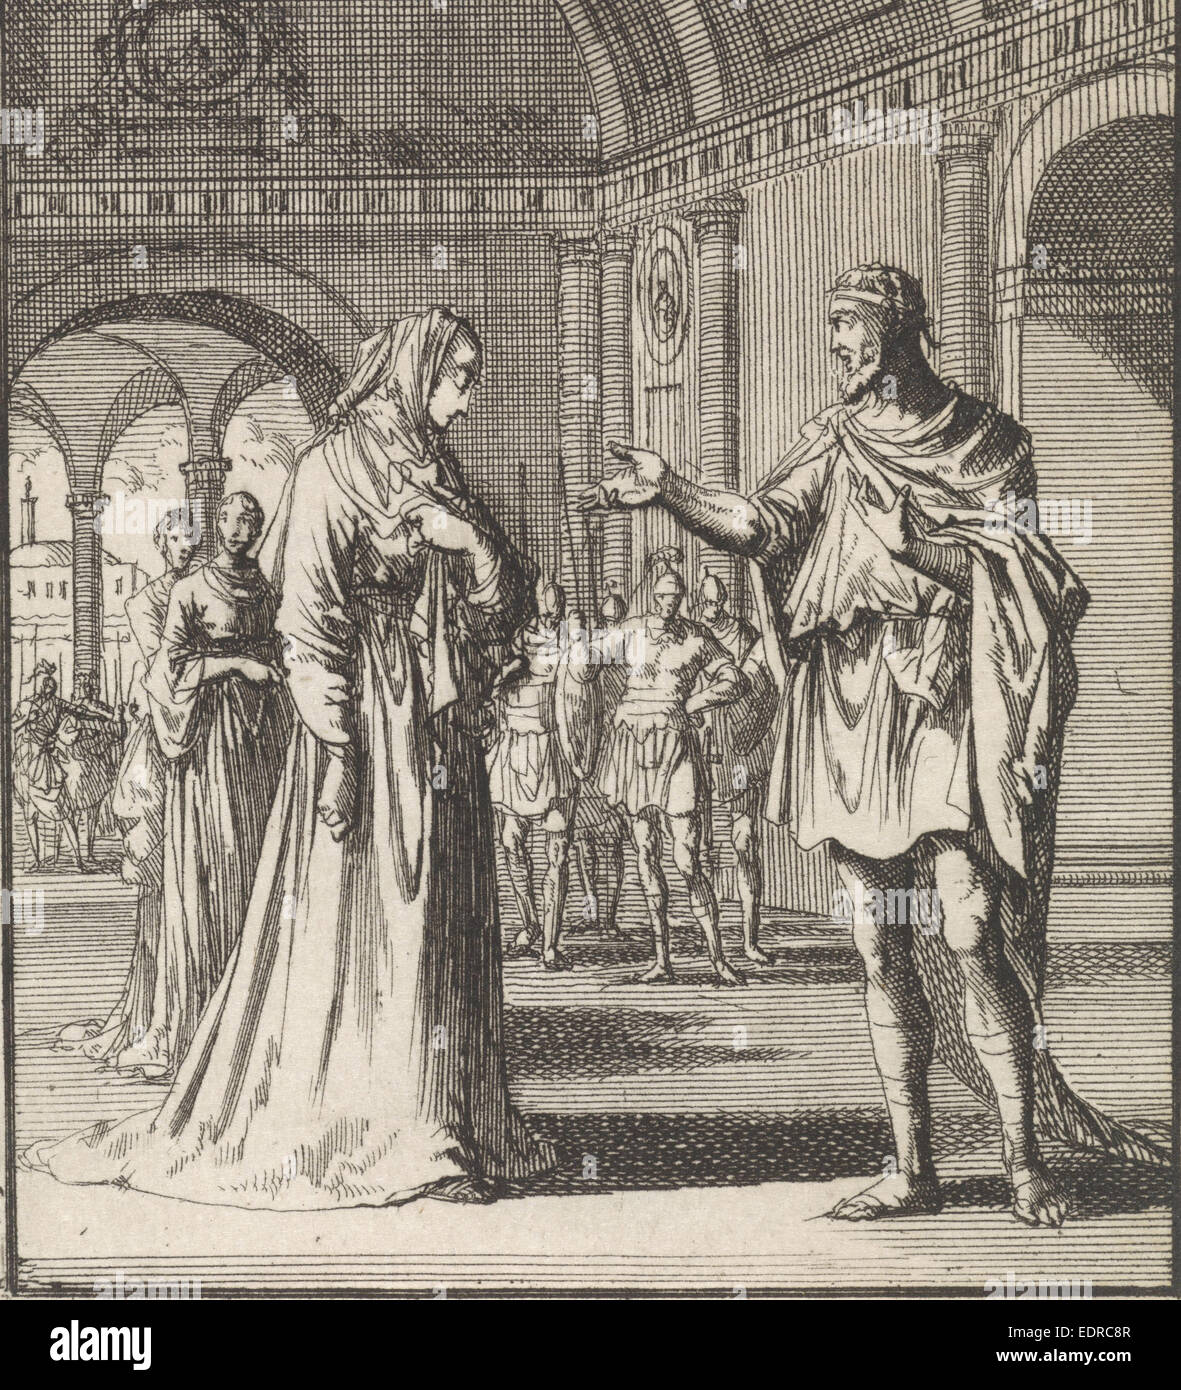 Gekleidet in einem zurückhaltenden Gewand, Jan Luyken, 1699 Stockfoto